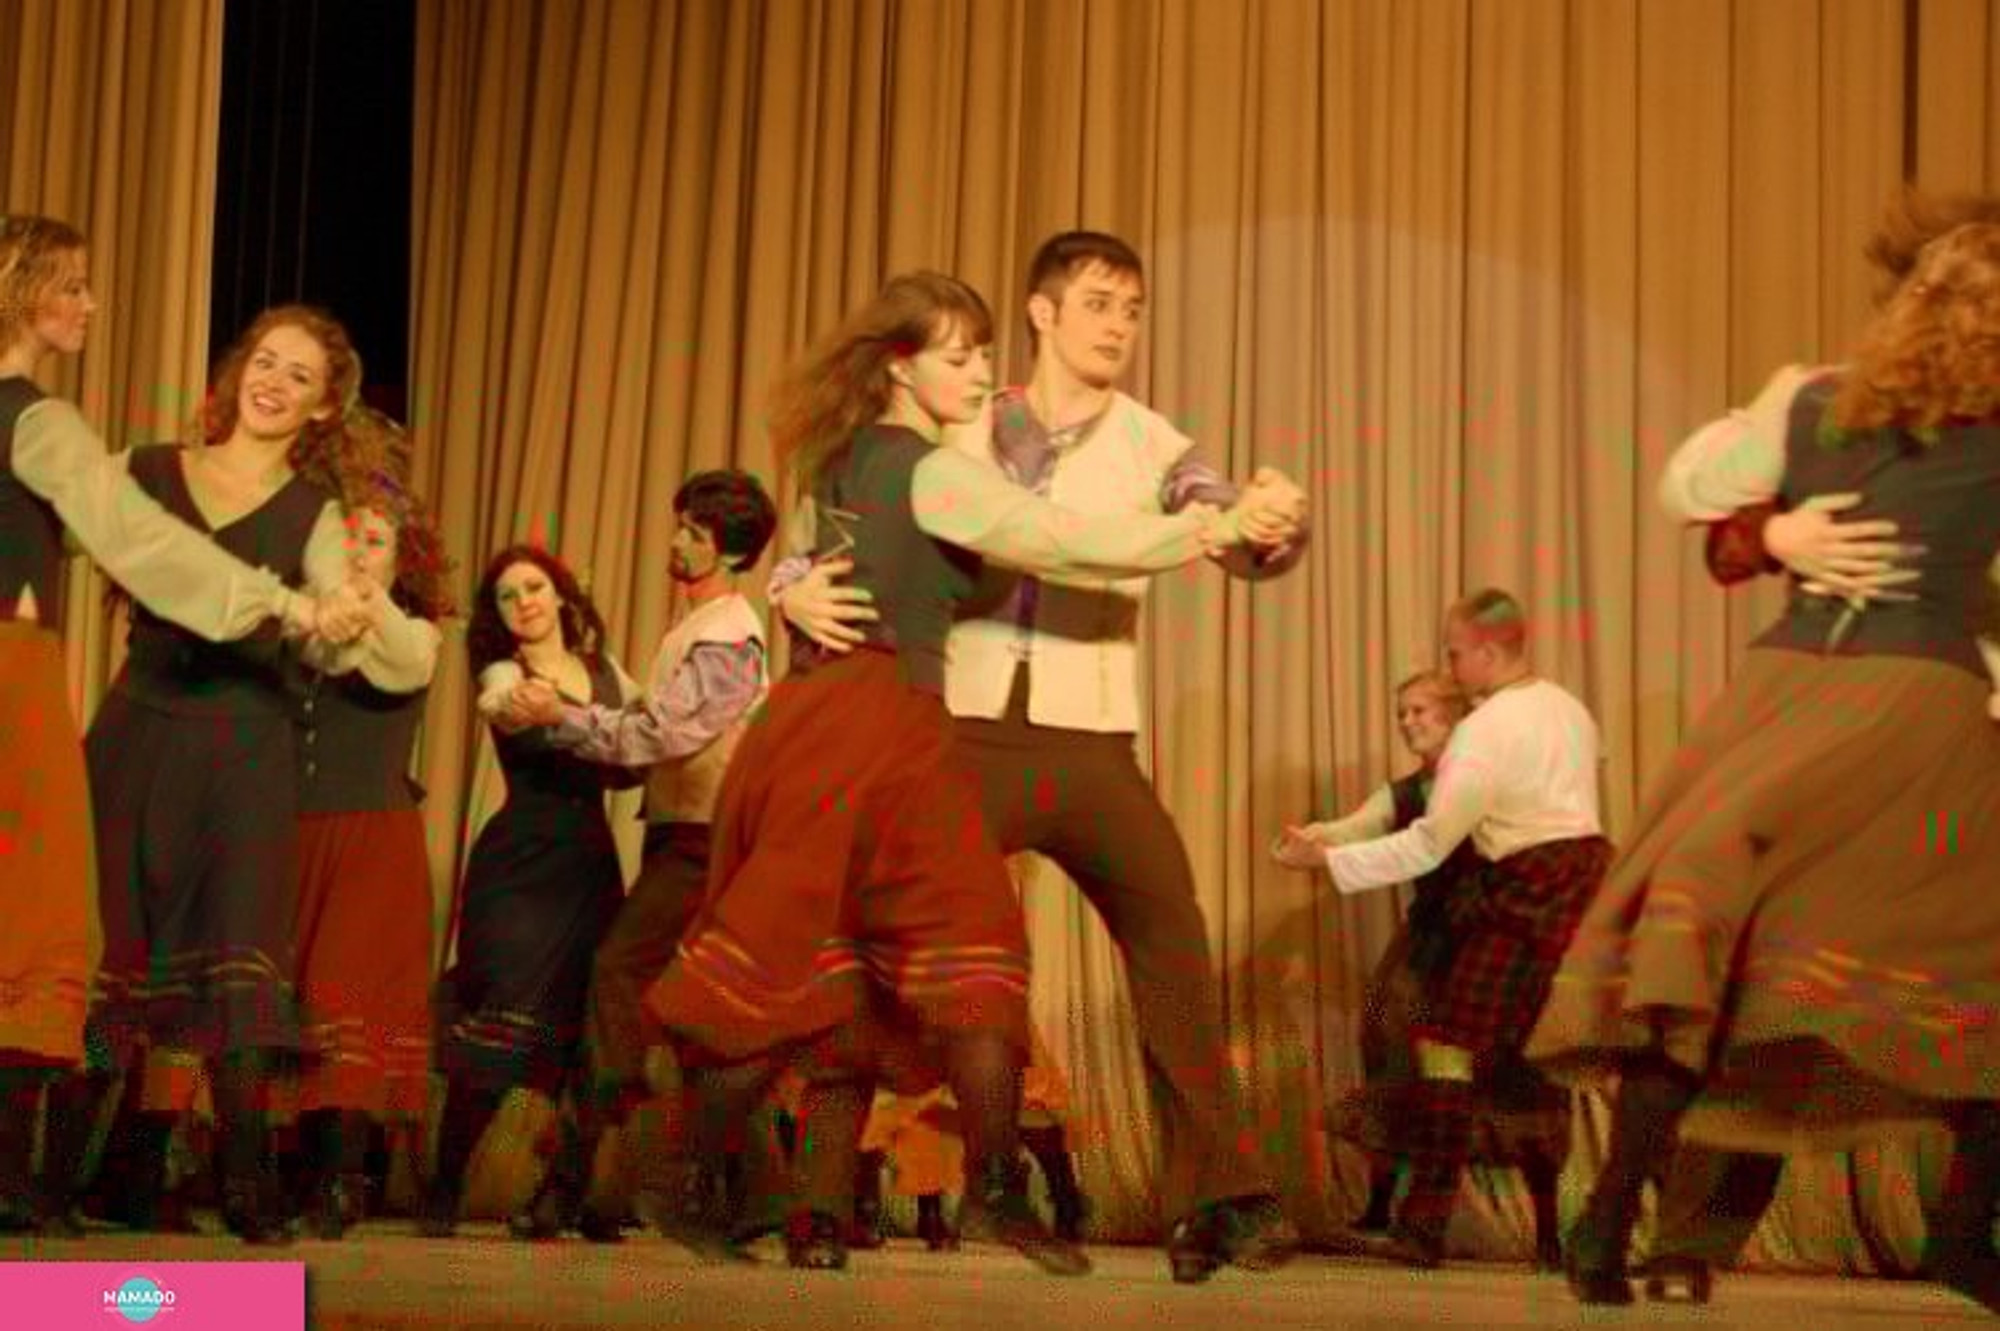 "Нарцы", бесплатная студия народного танца для детей от 7 лет и взрослых на набережной Макарова, СПб 